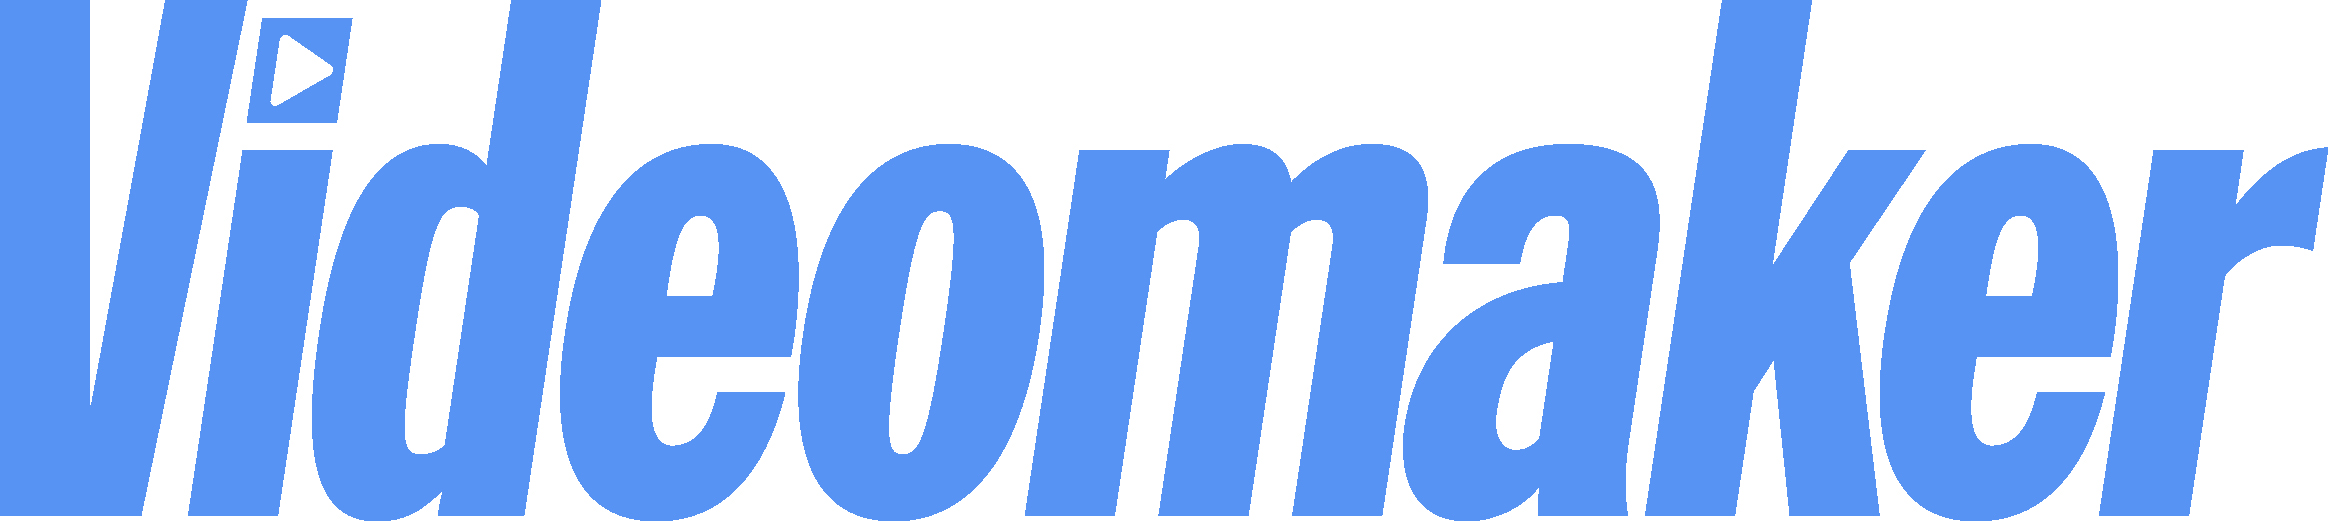 VM logo Blue